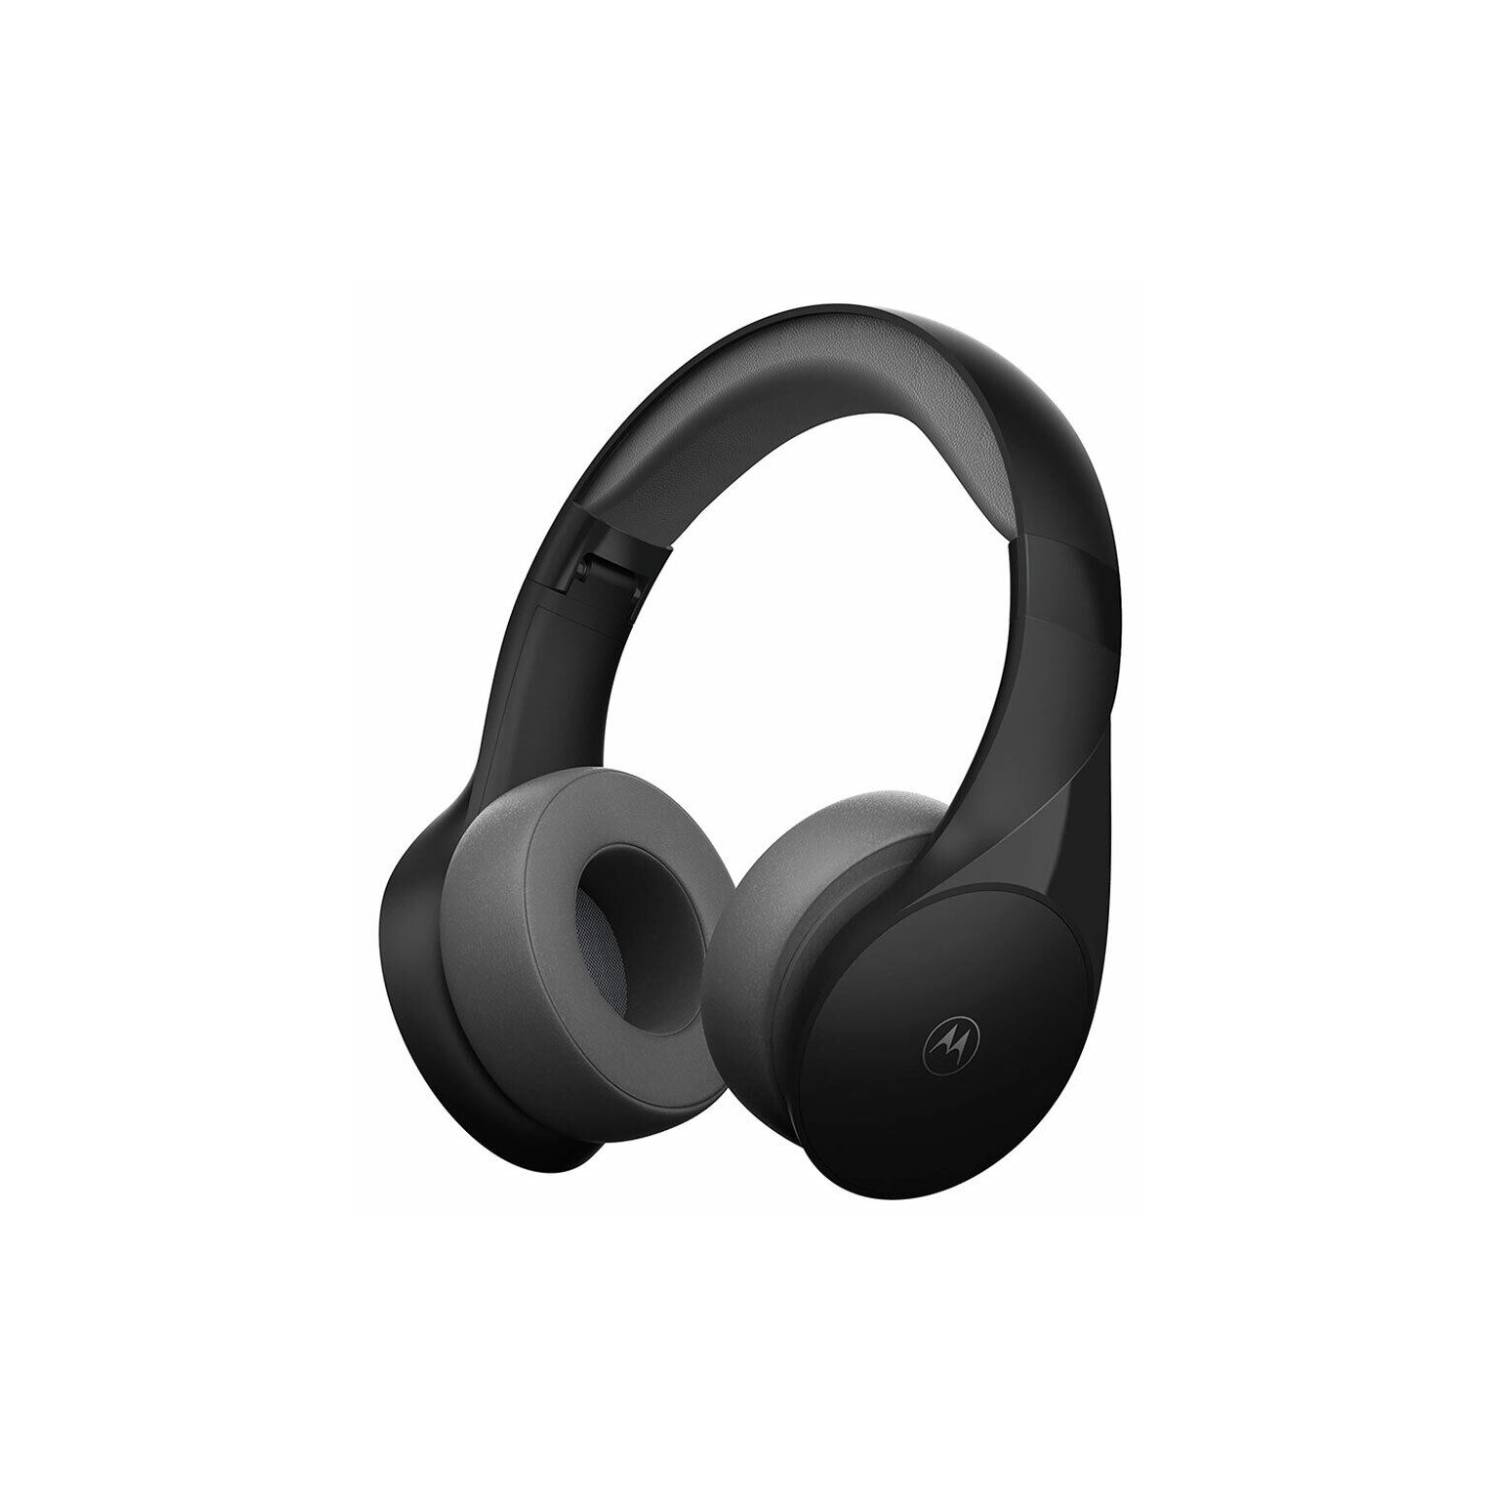 MOTO XT500 Auriculares sobre oído de Motorola Sound